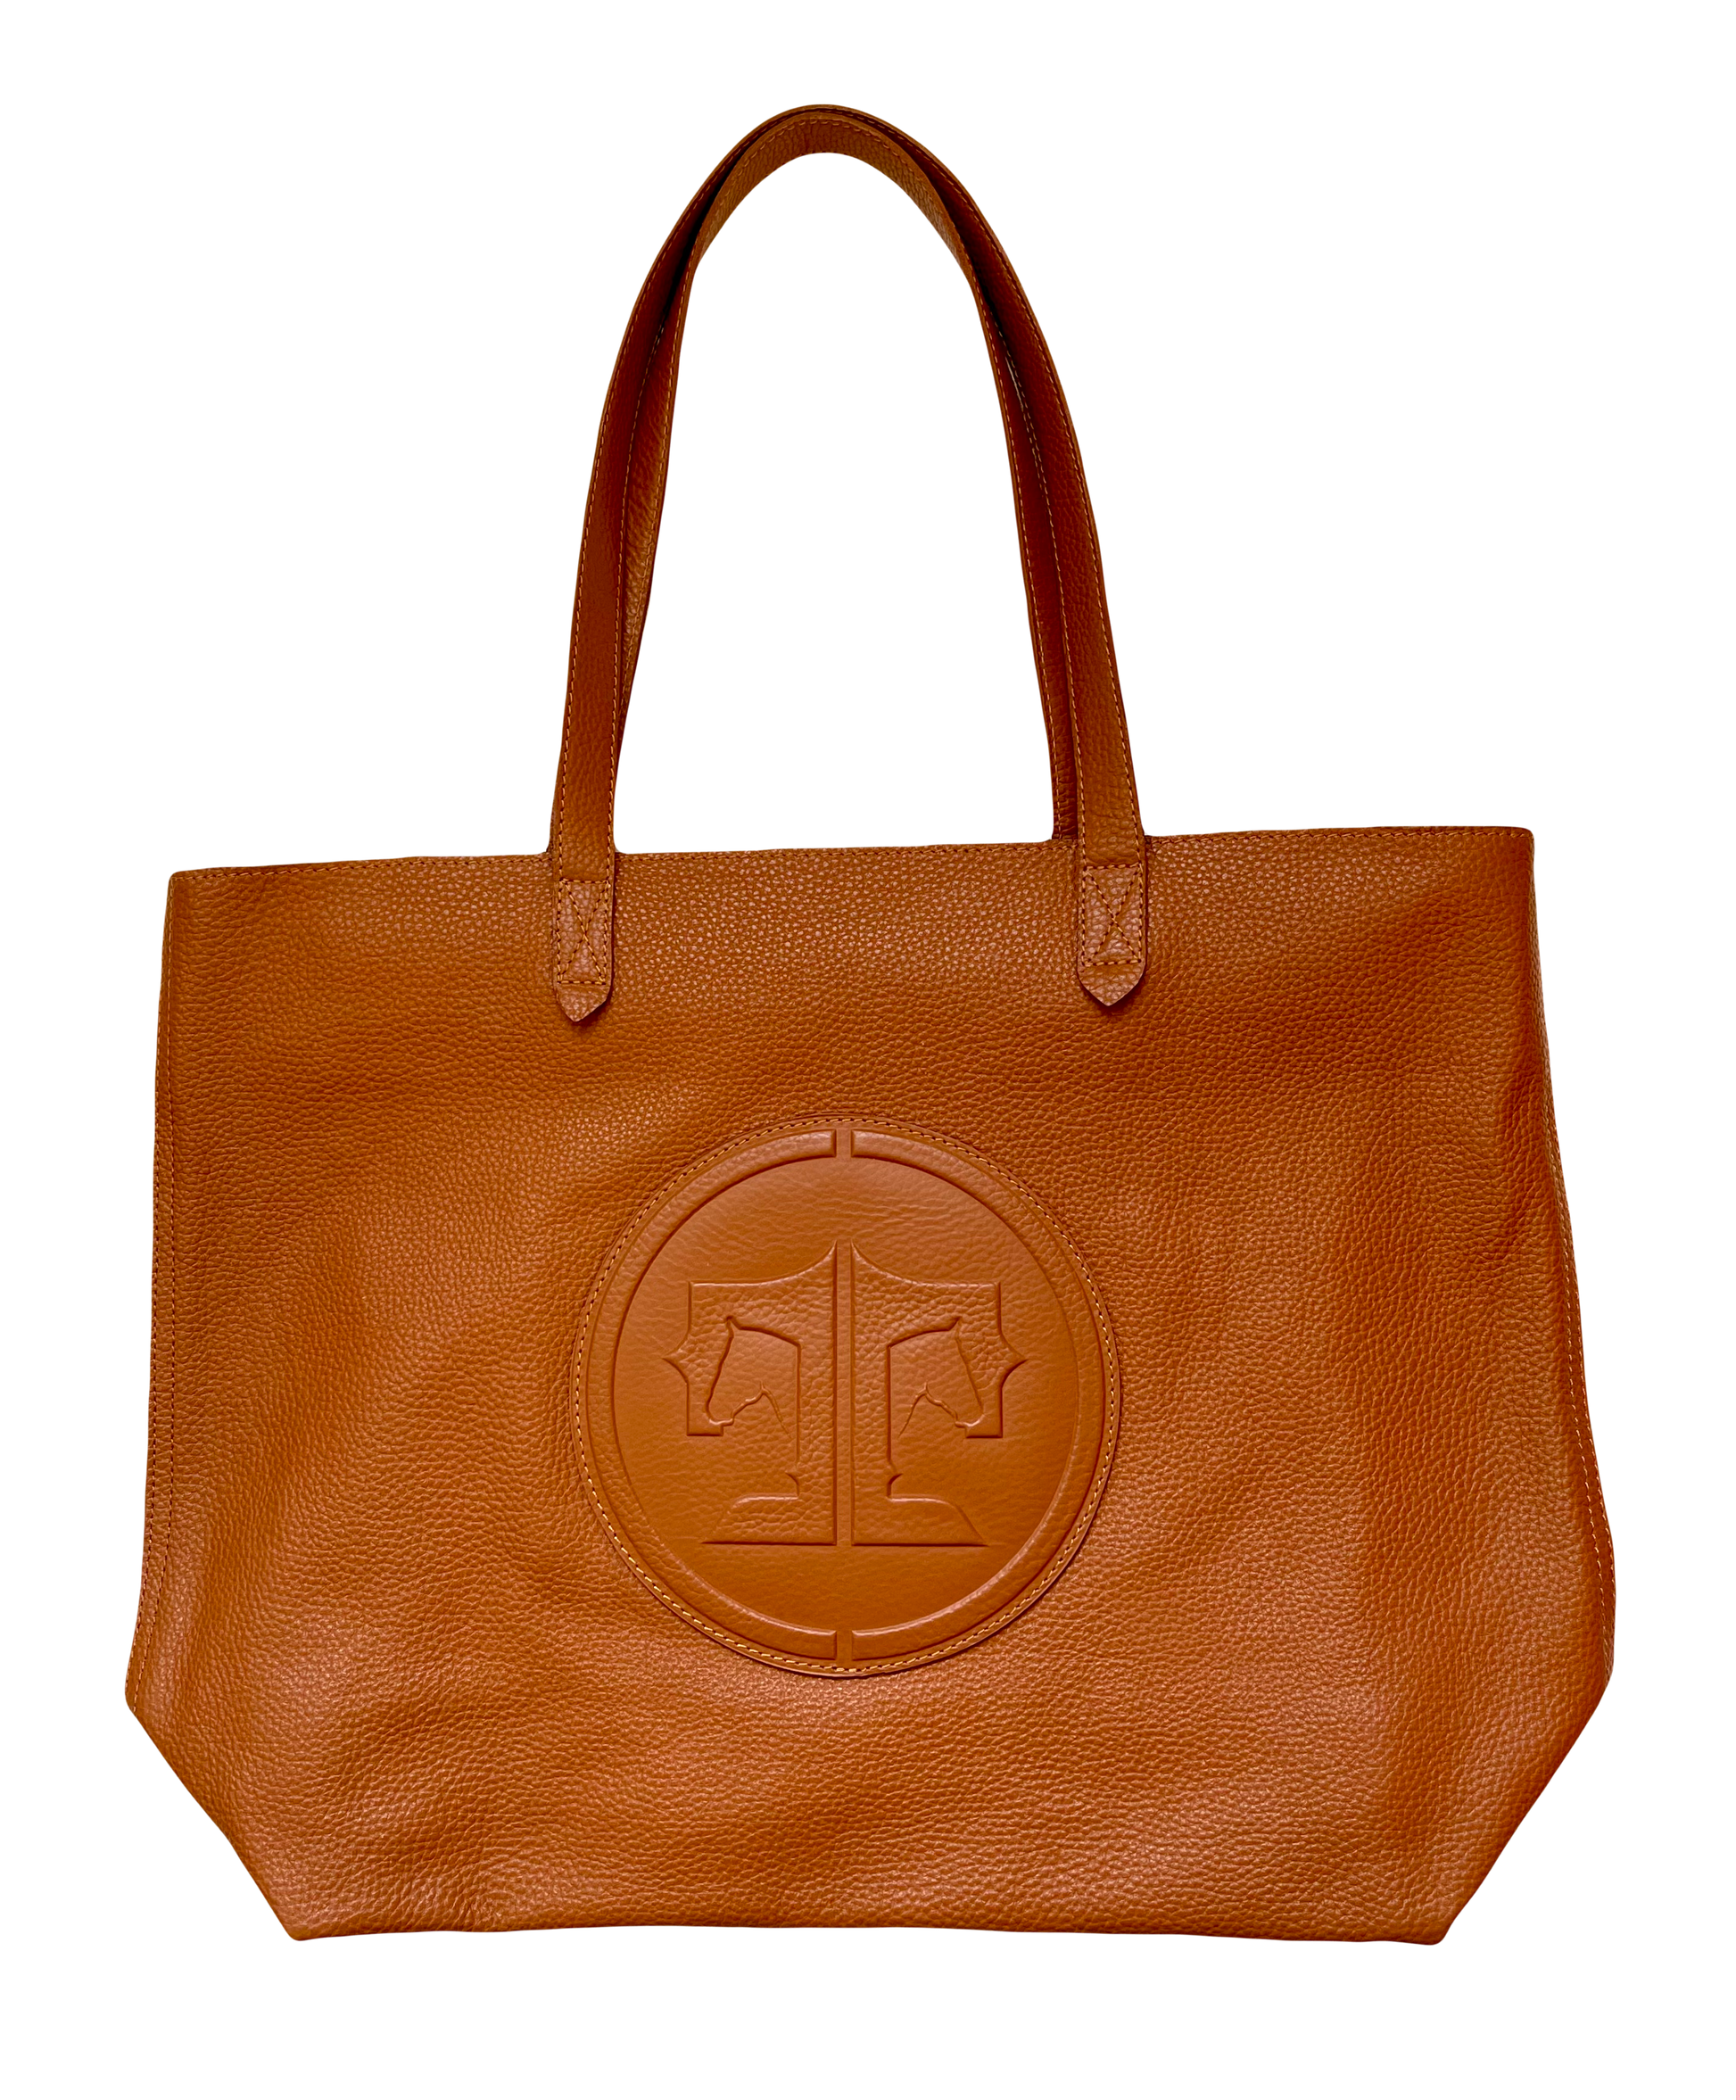 Tucker Tweed Equestrian Leather Handbags Signature Chestnut Sonoma Shoulder Bag: Signature